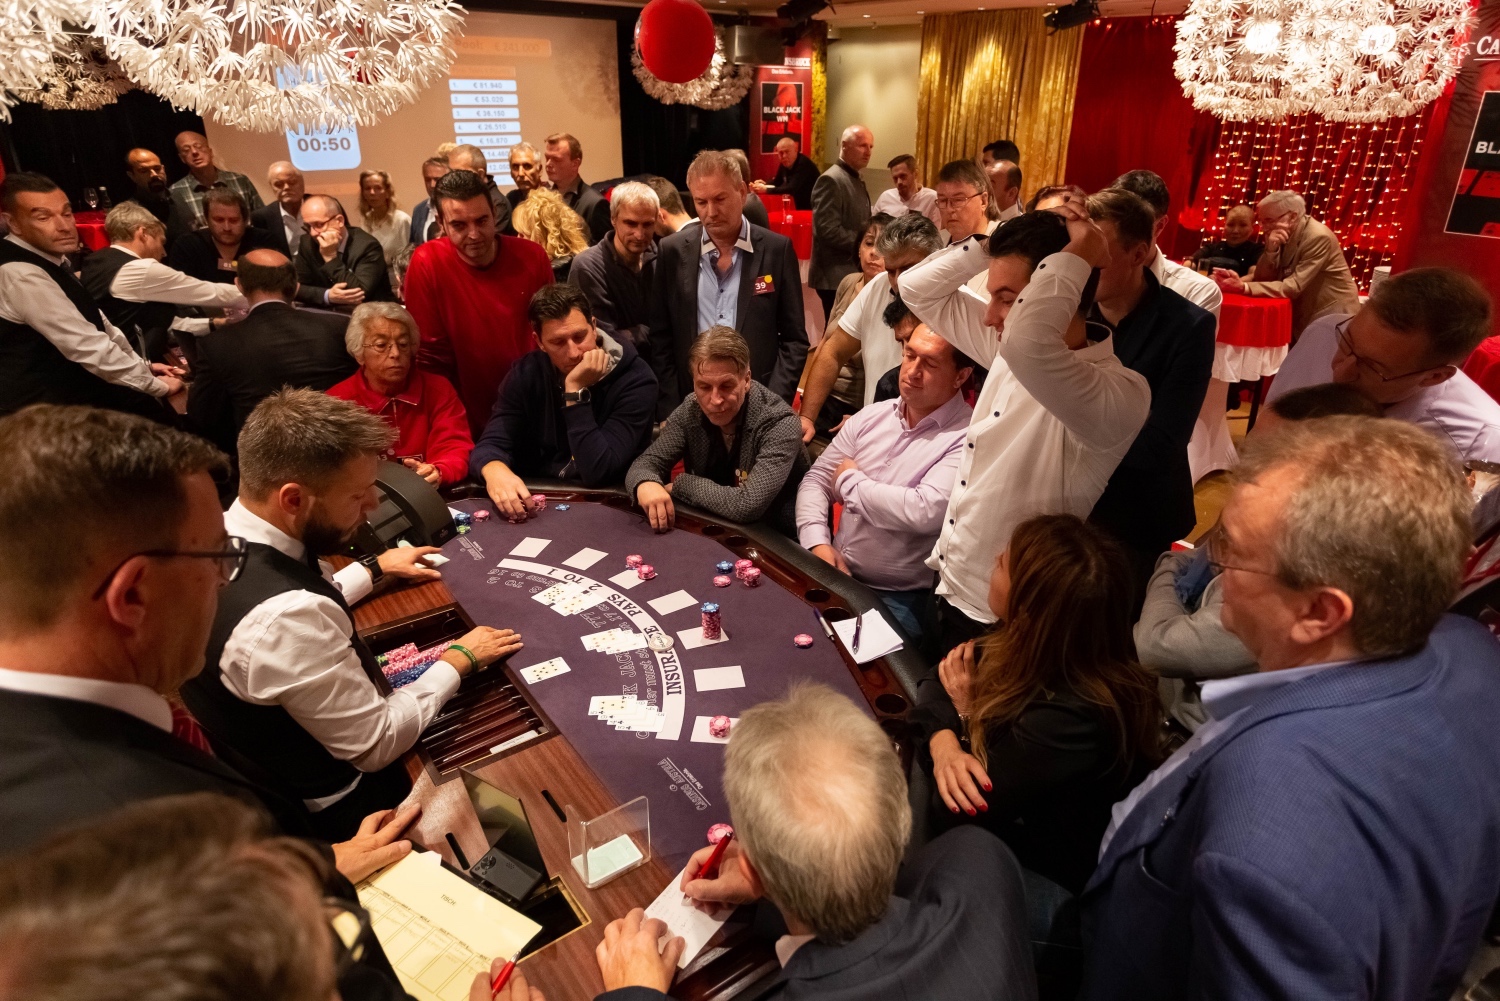 Blackjack am Tisch: Sieben Spieler und viele Zuseher.